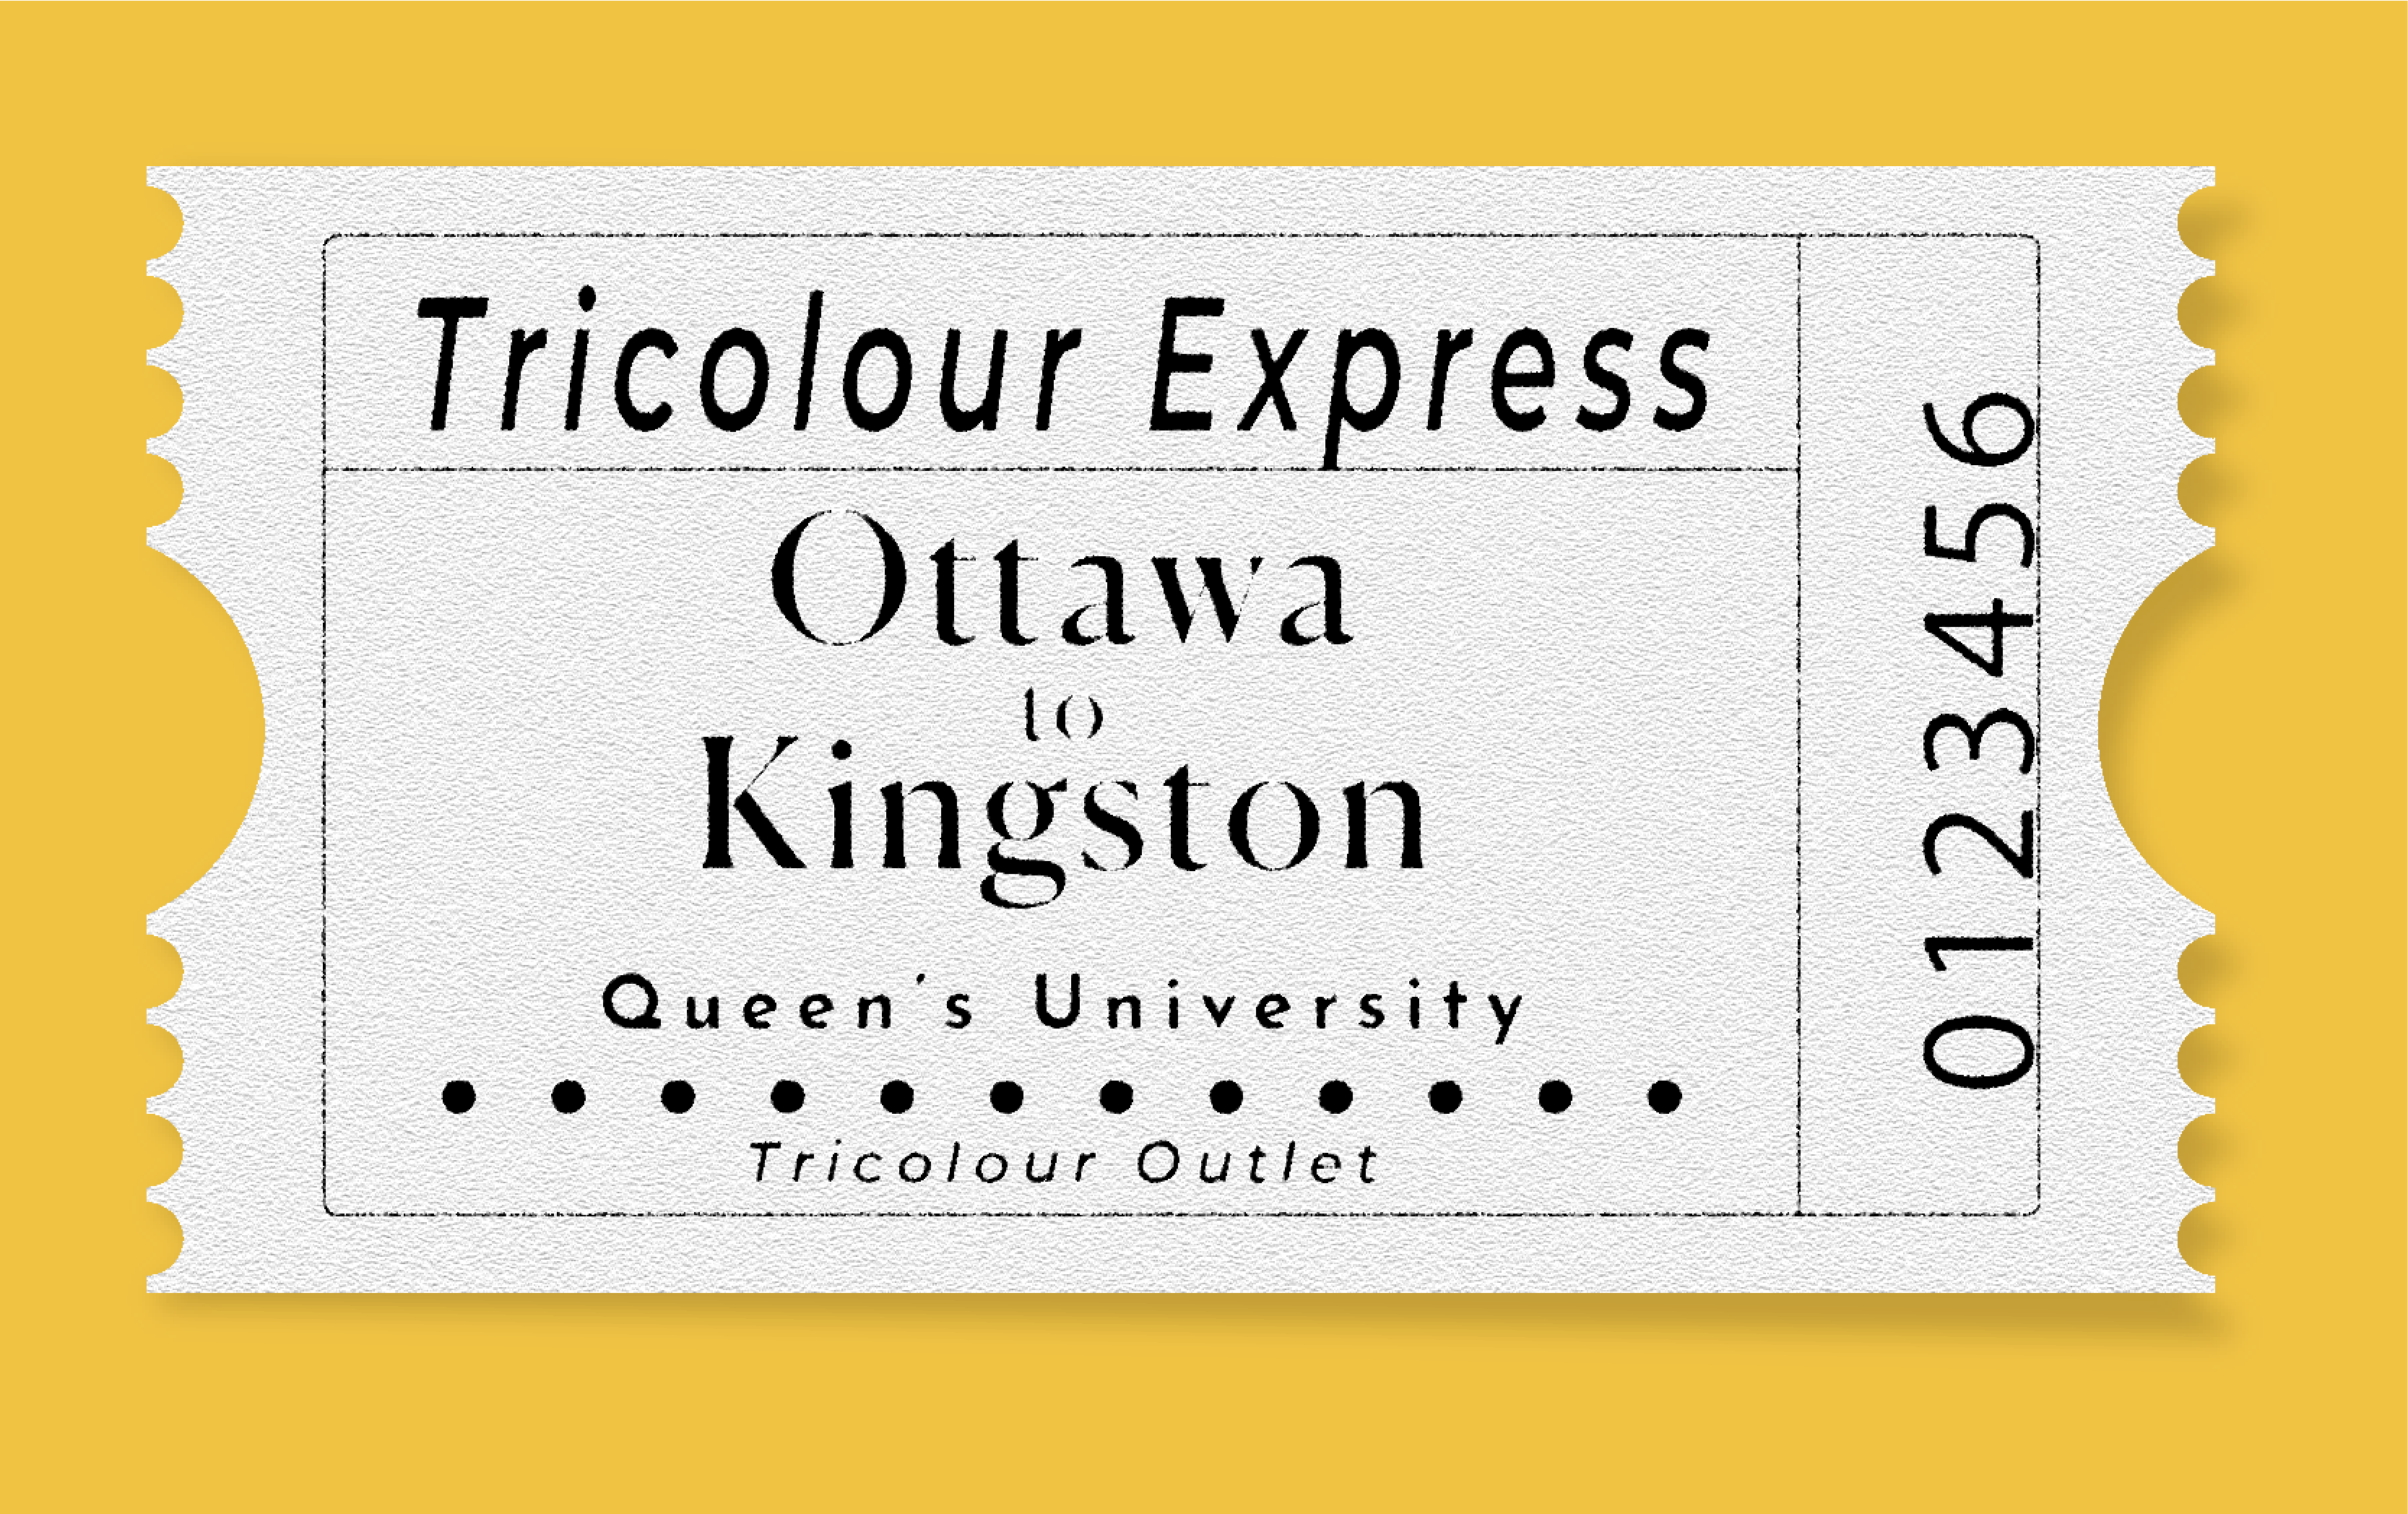 Tricolour Express: Ottawa to Kingston